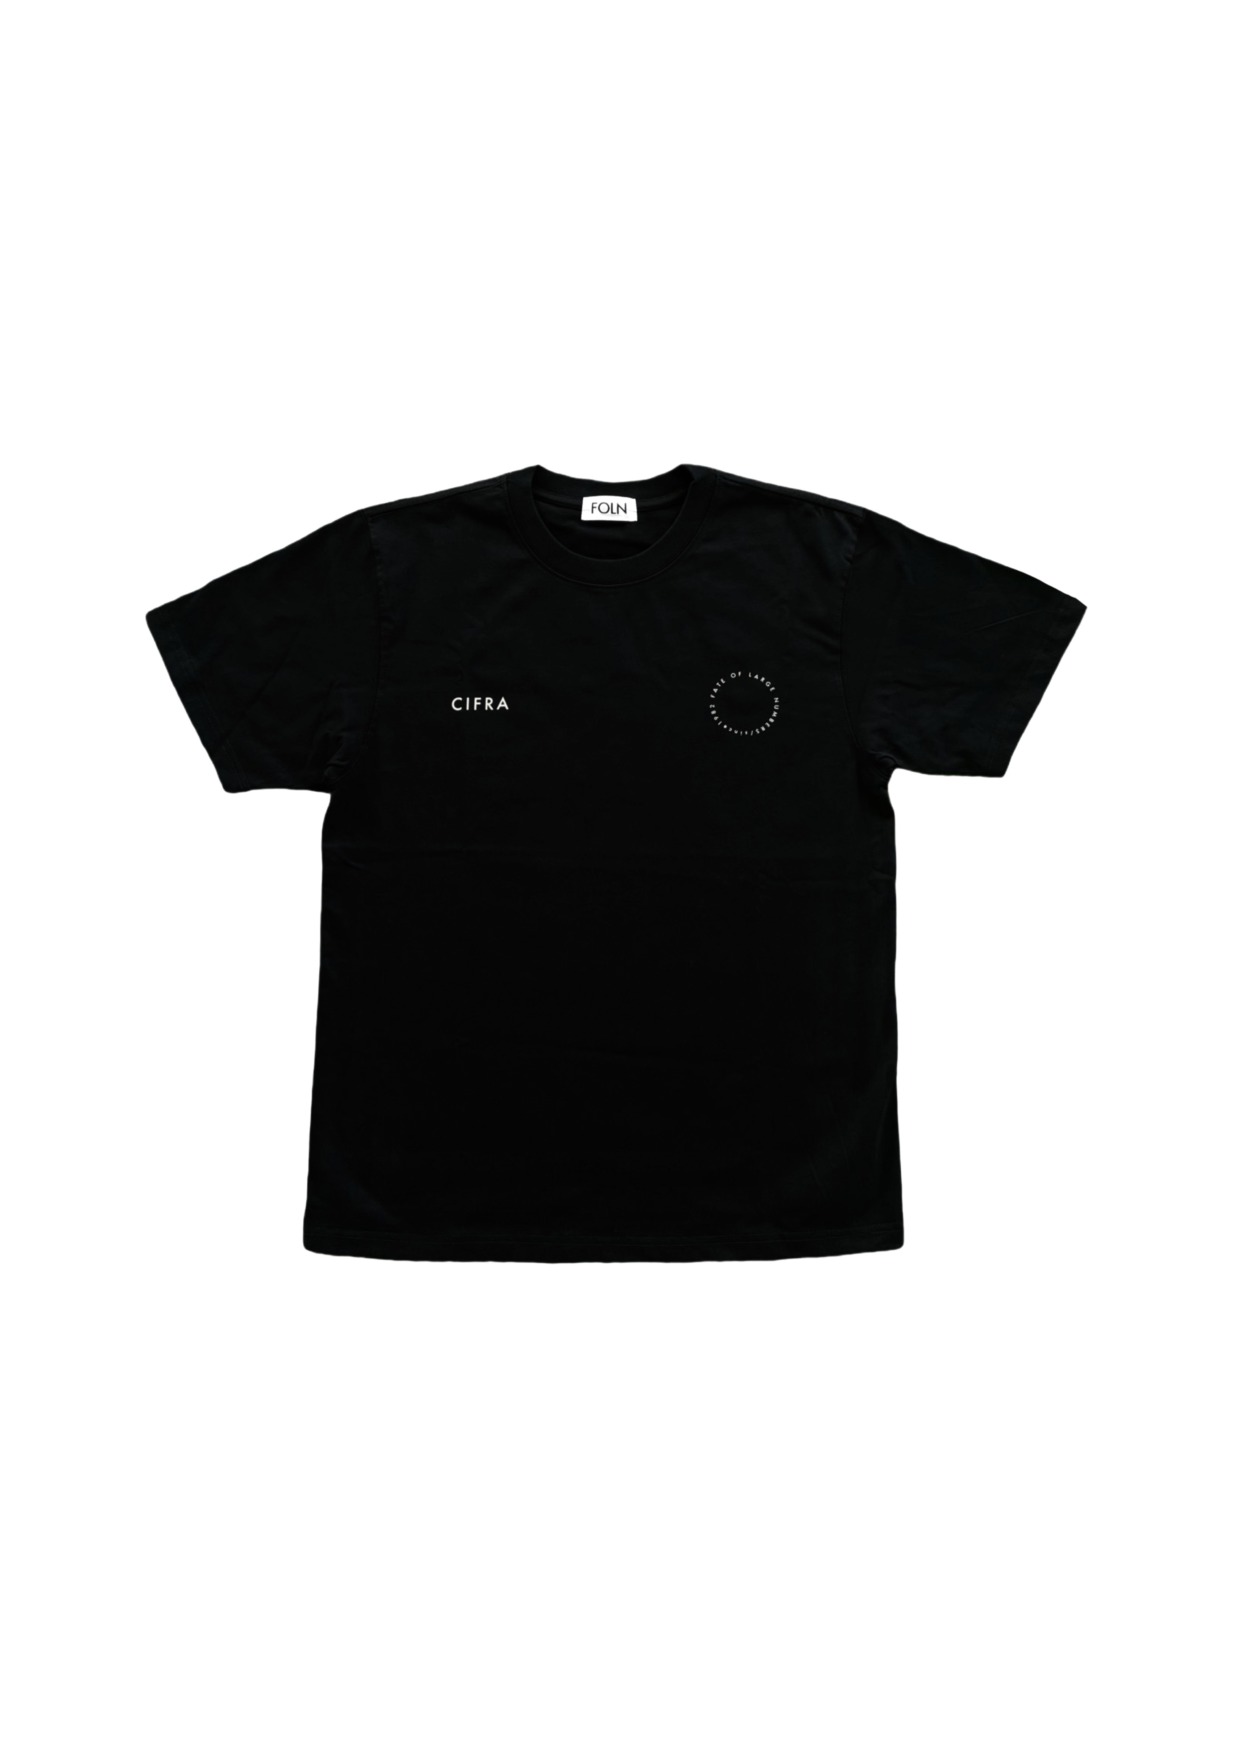 CIFRA×FOLN logo Tshirt black